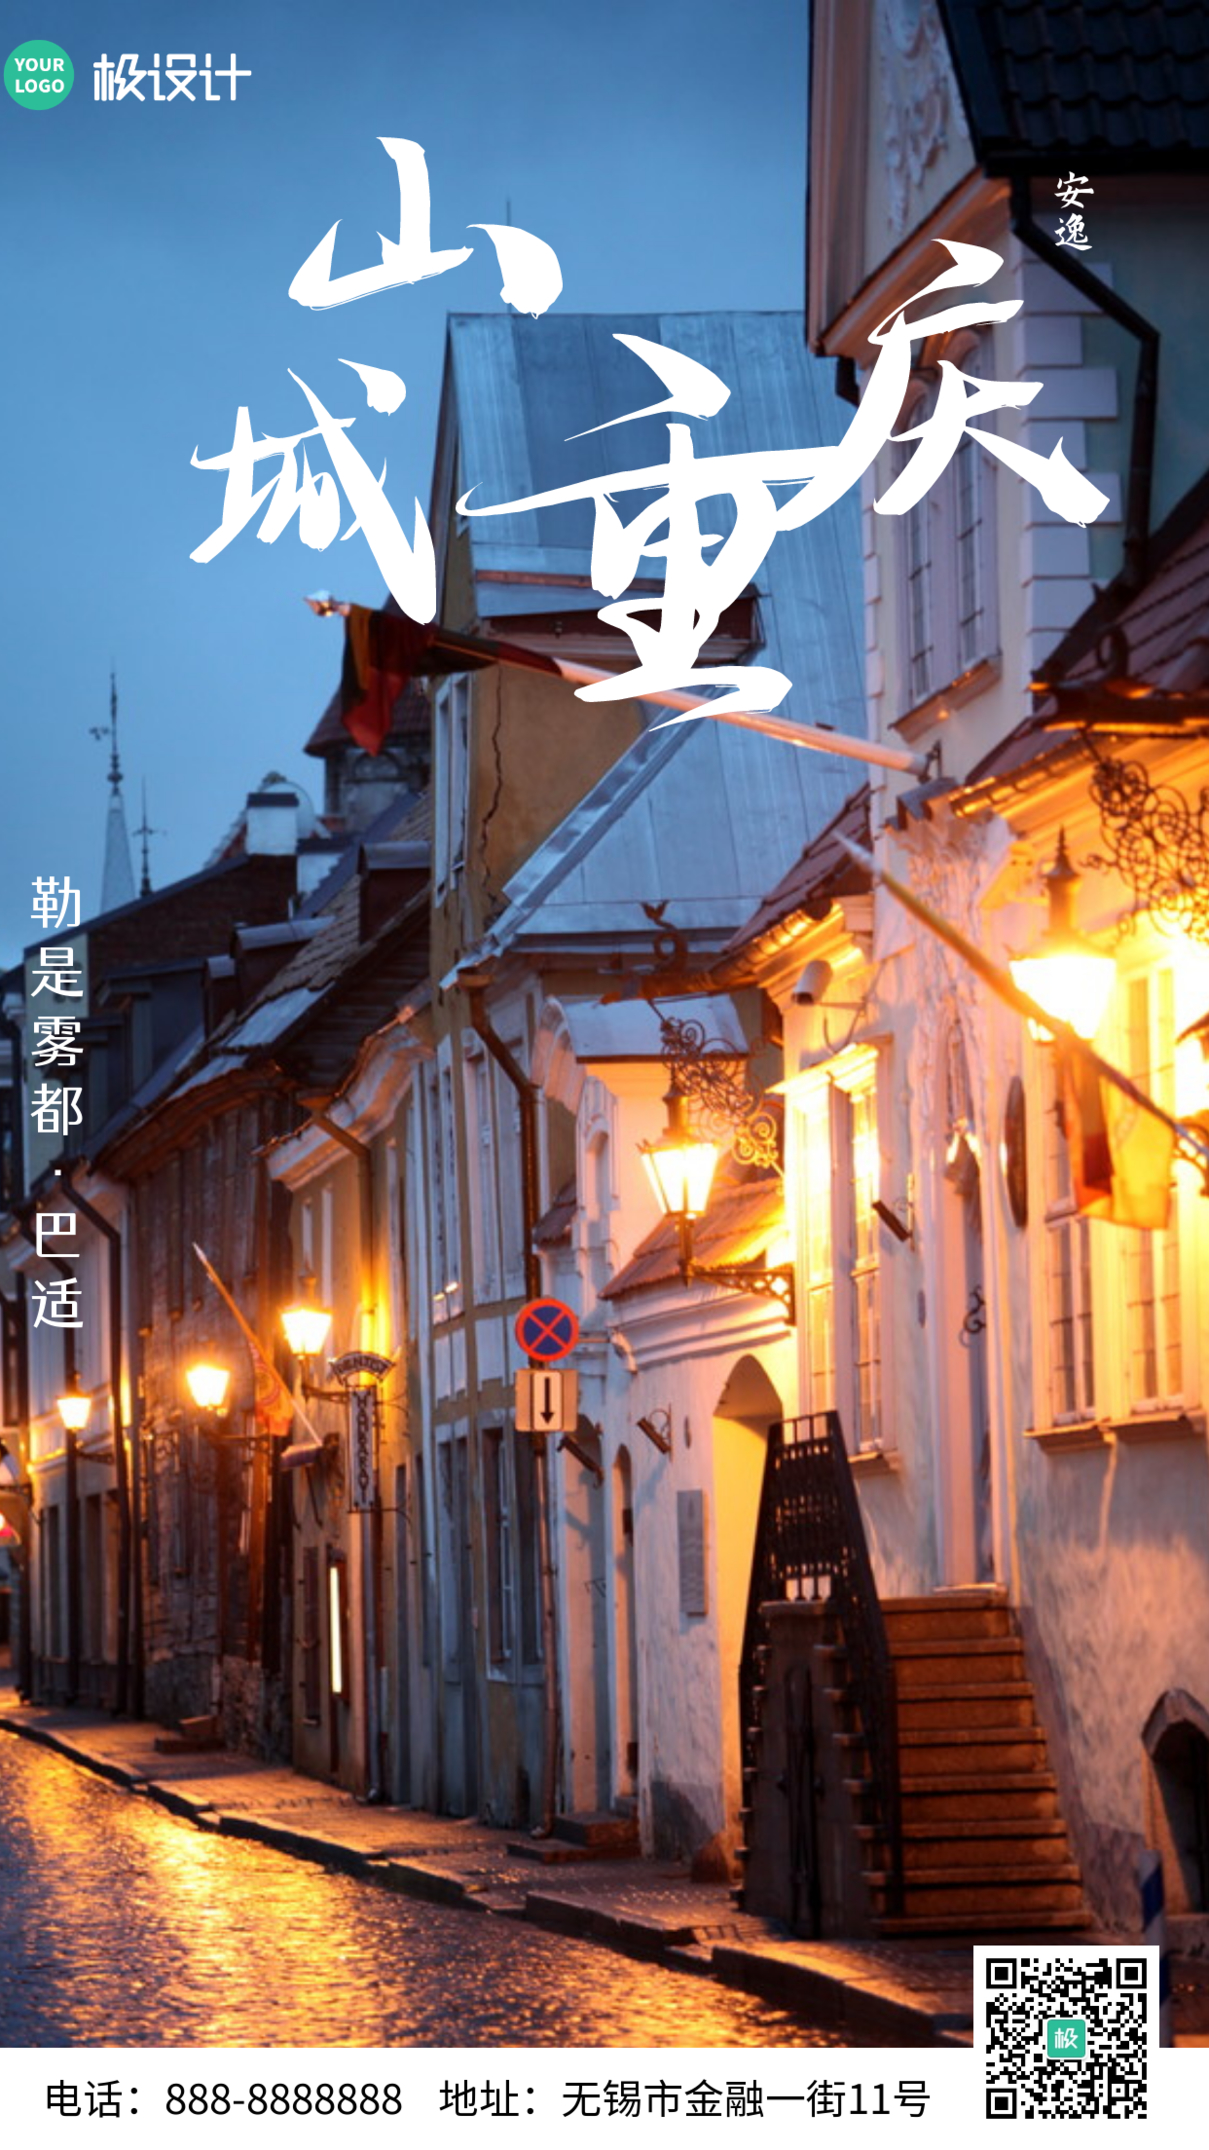 重庆竖版风景简约大气营销手机摄影海报